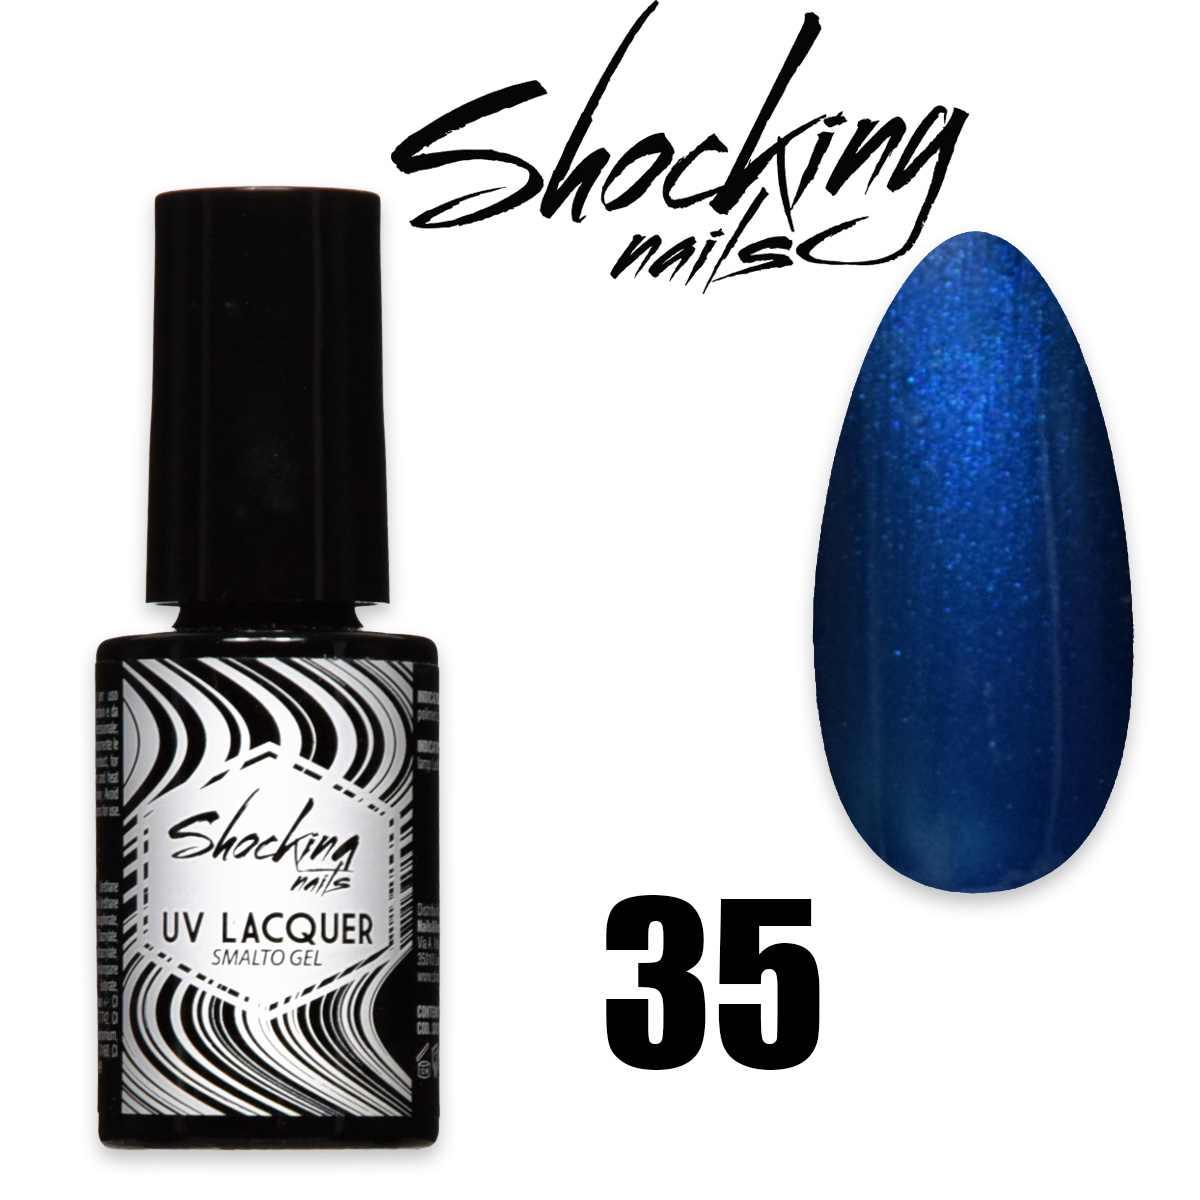 Shocking nails uv lacquer 35 smalto semipermanente gel